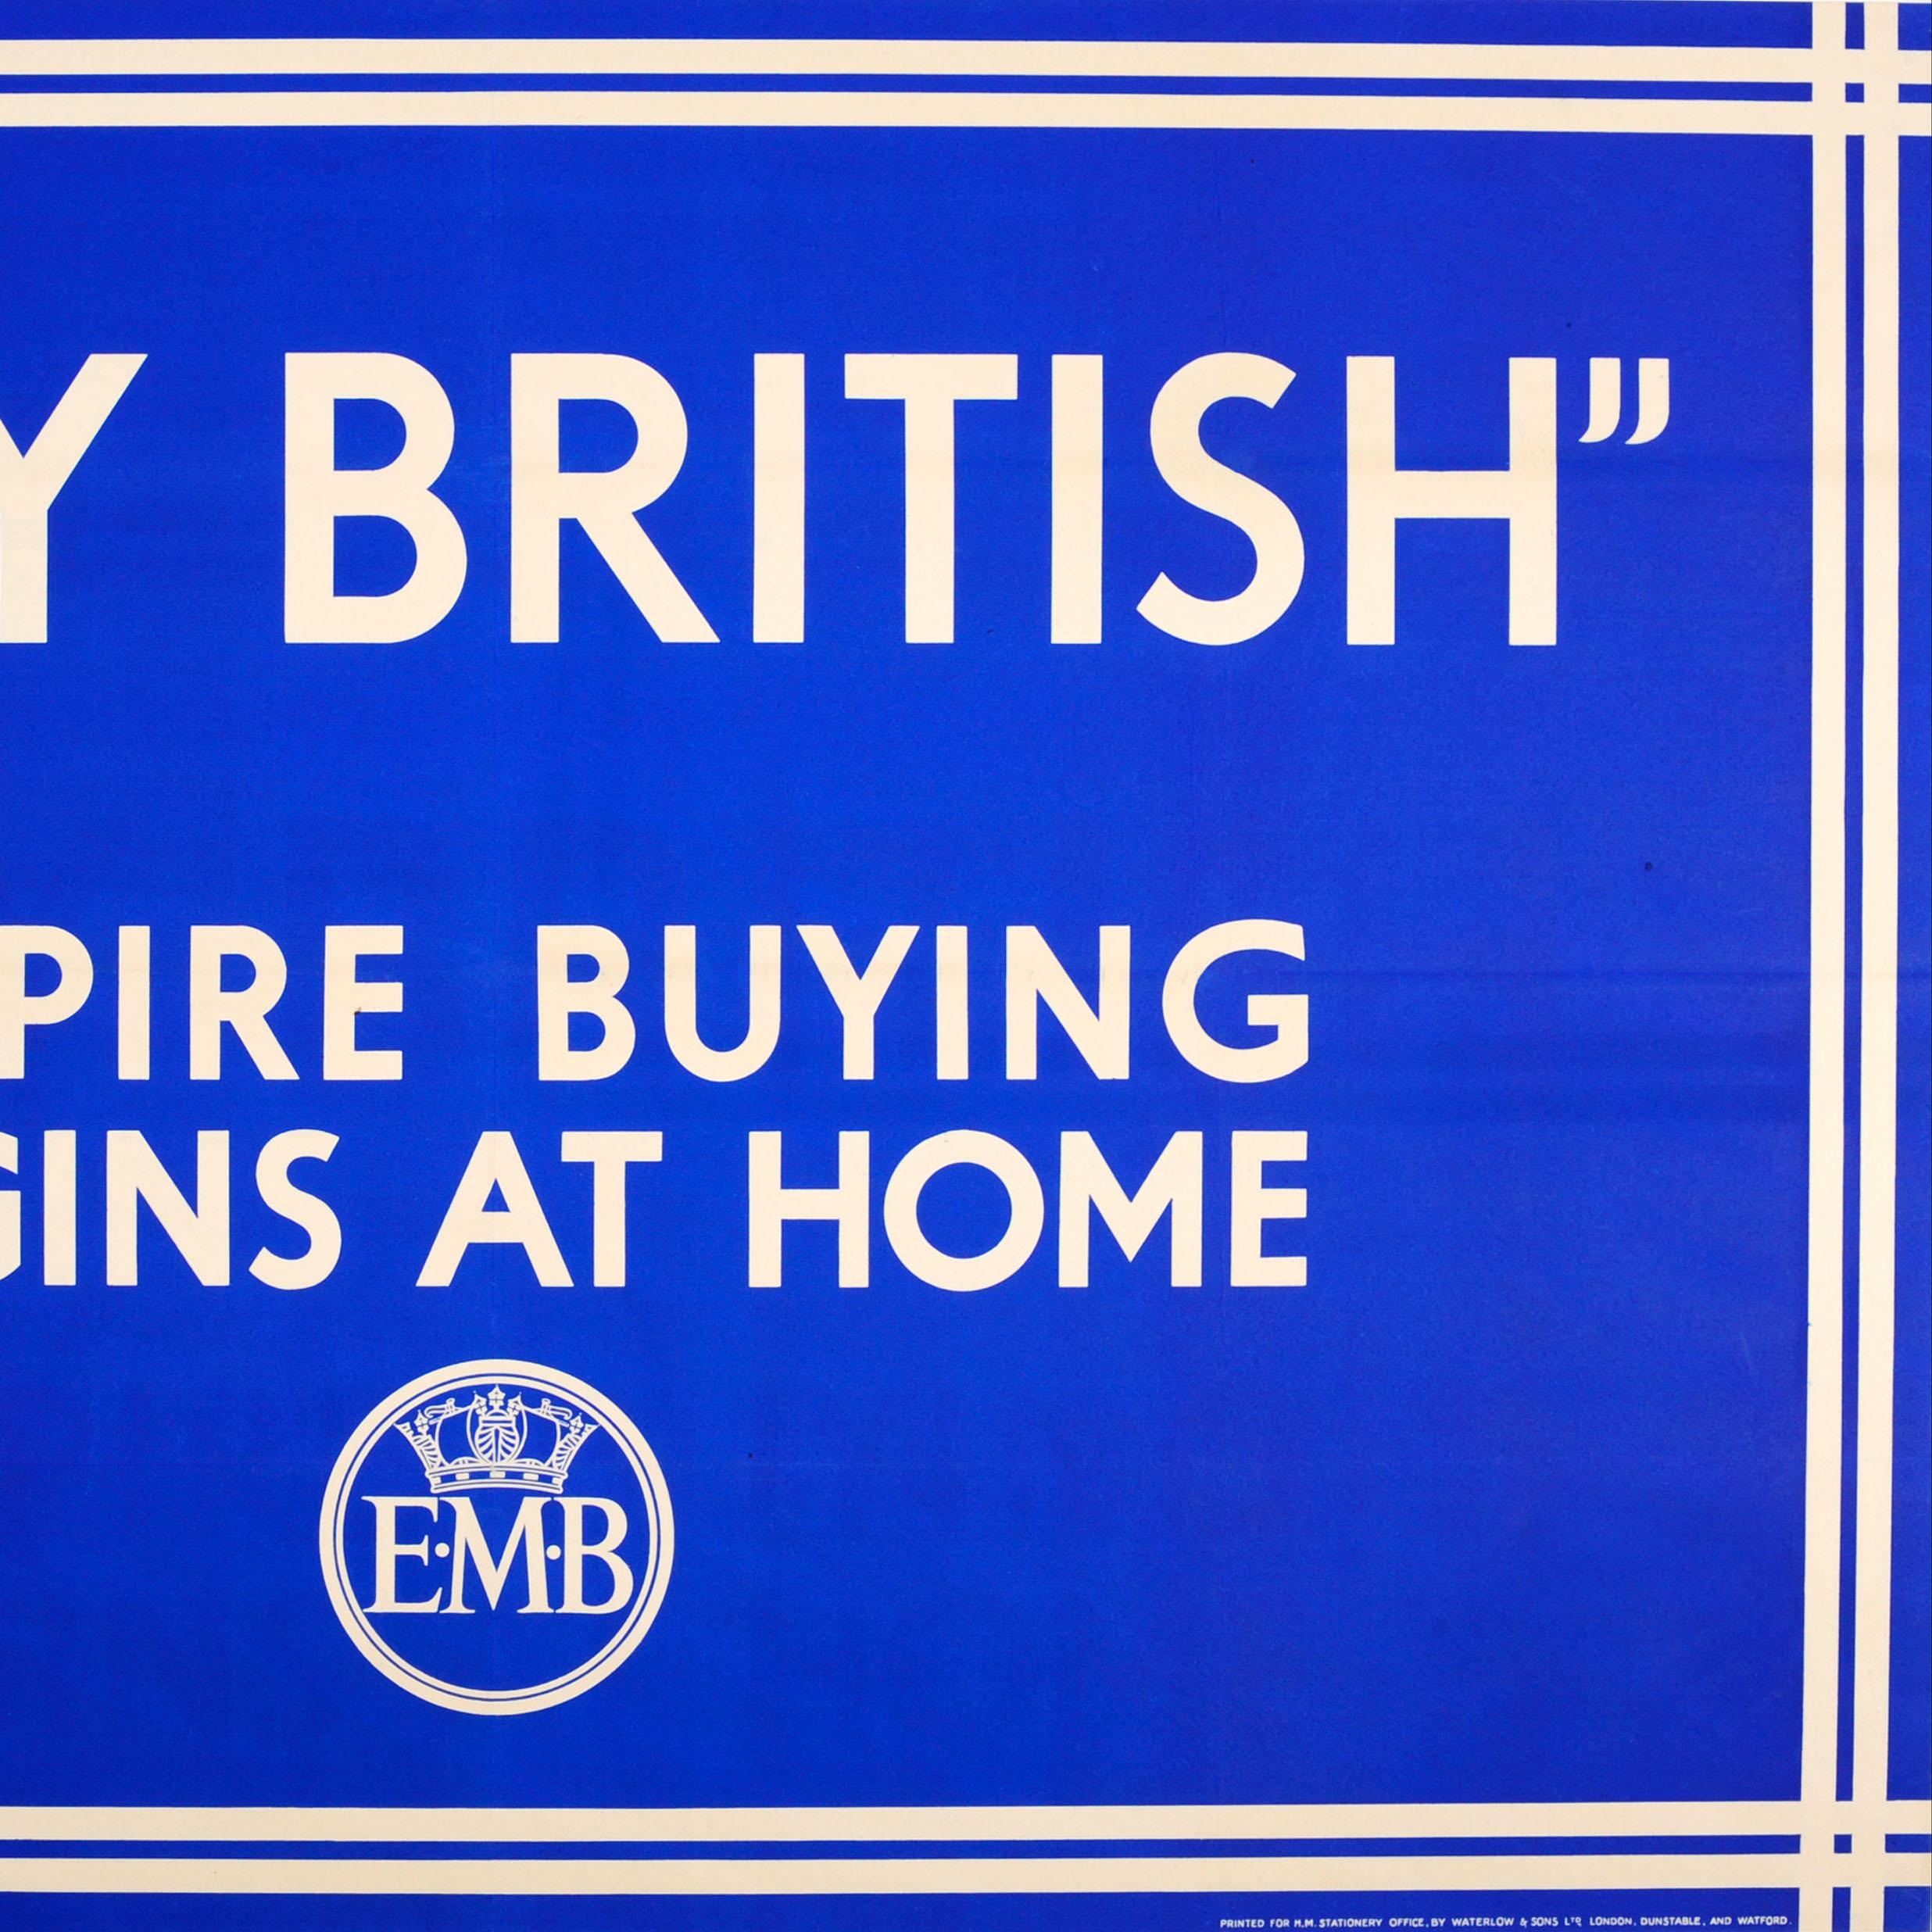 Originales Vintage-Werbeplakat des Empire Marketing Board - Buy British Empire Buying Begins At Home - mit einem ikonischen, einfachen Design im Stil von Keep Calm and Carry On mit weißem Text auf blauem Hintergrund und dem EMB-Kronenlogo darunter.